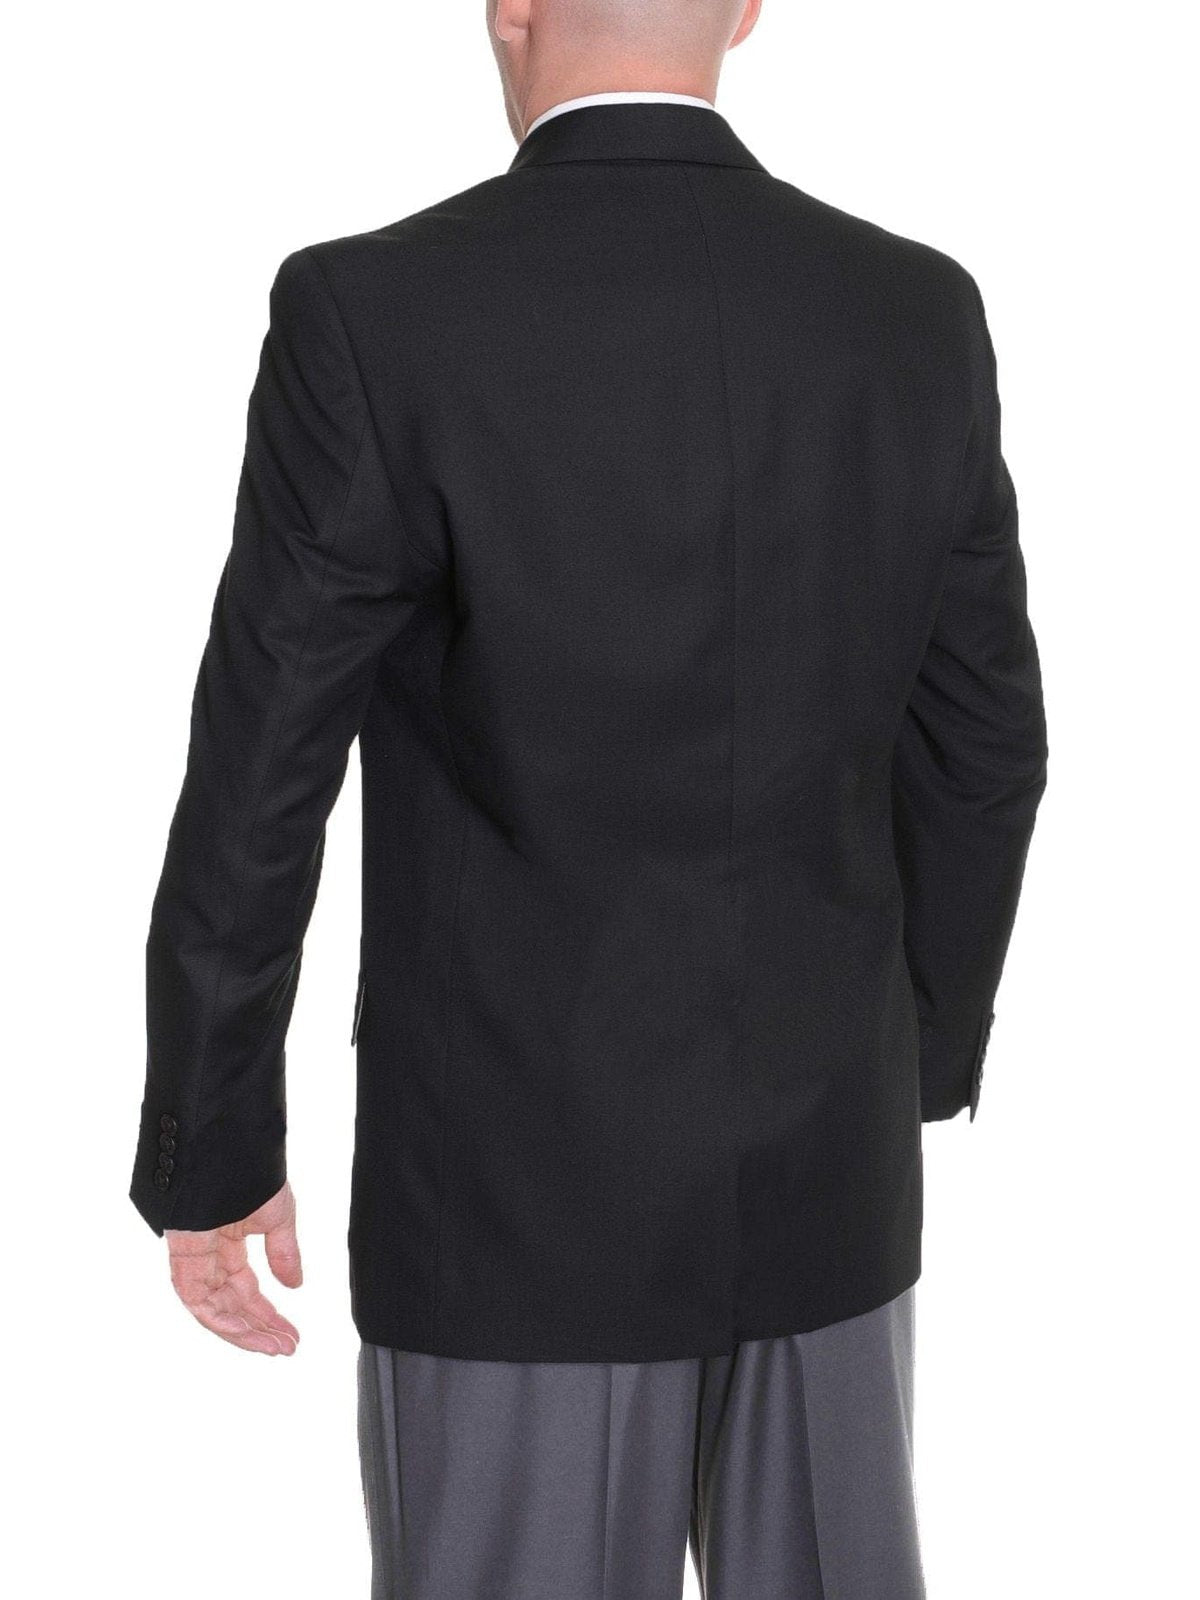 IZOD BLAZERS Izod Classic Fit Solid Black Two Button Blazer Sportcoat